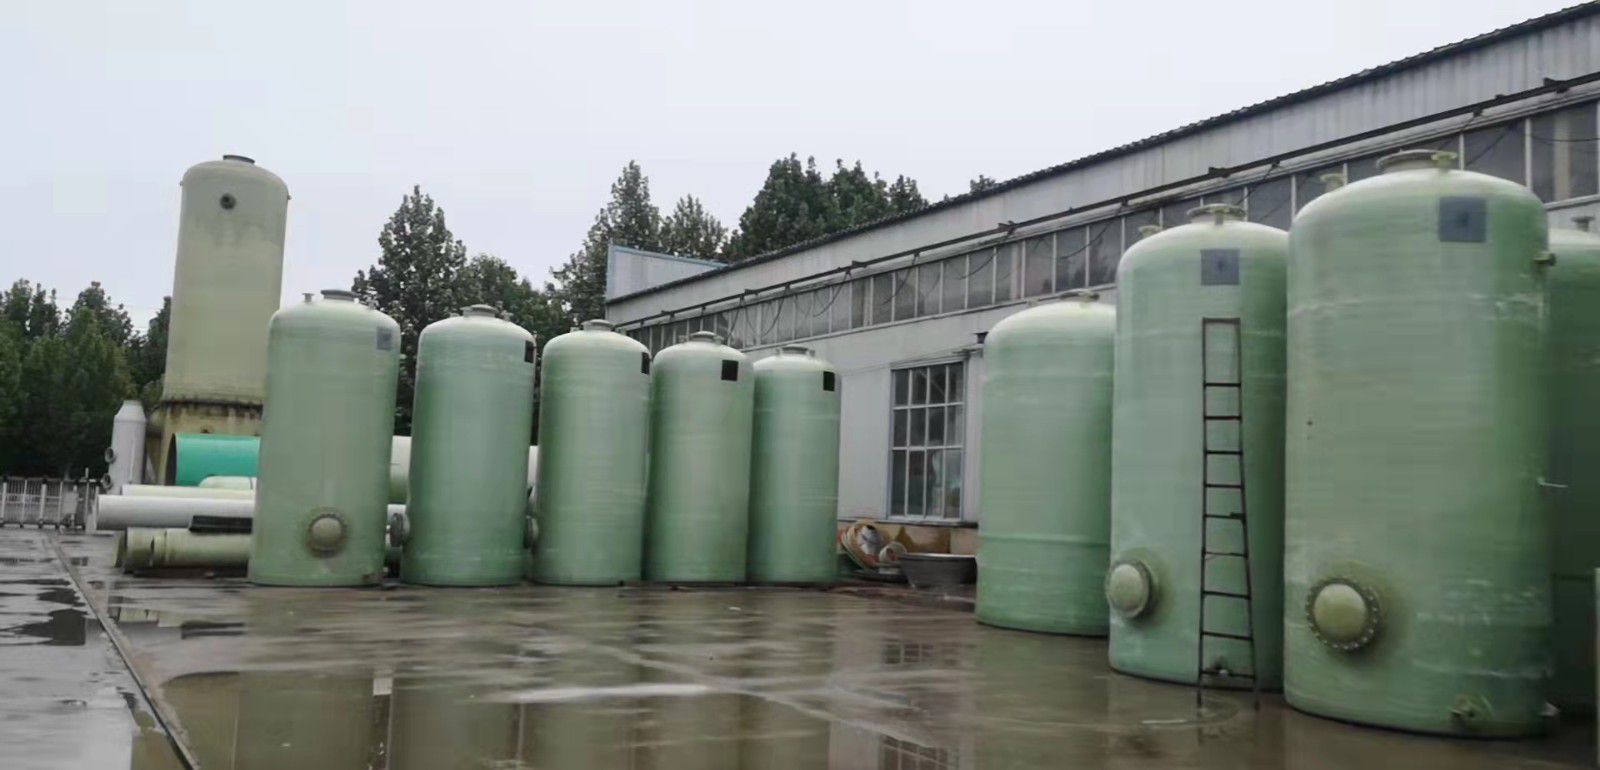 呼伦贝尔鄂伦春自治旗方形玻璃钢水箱环境保护